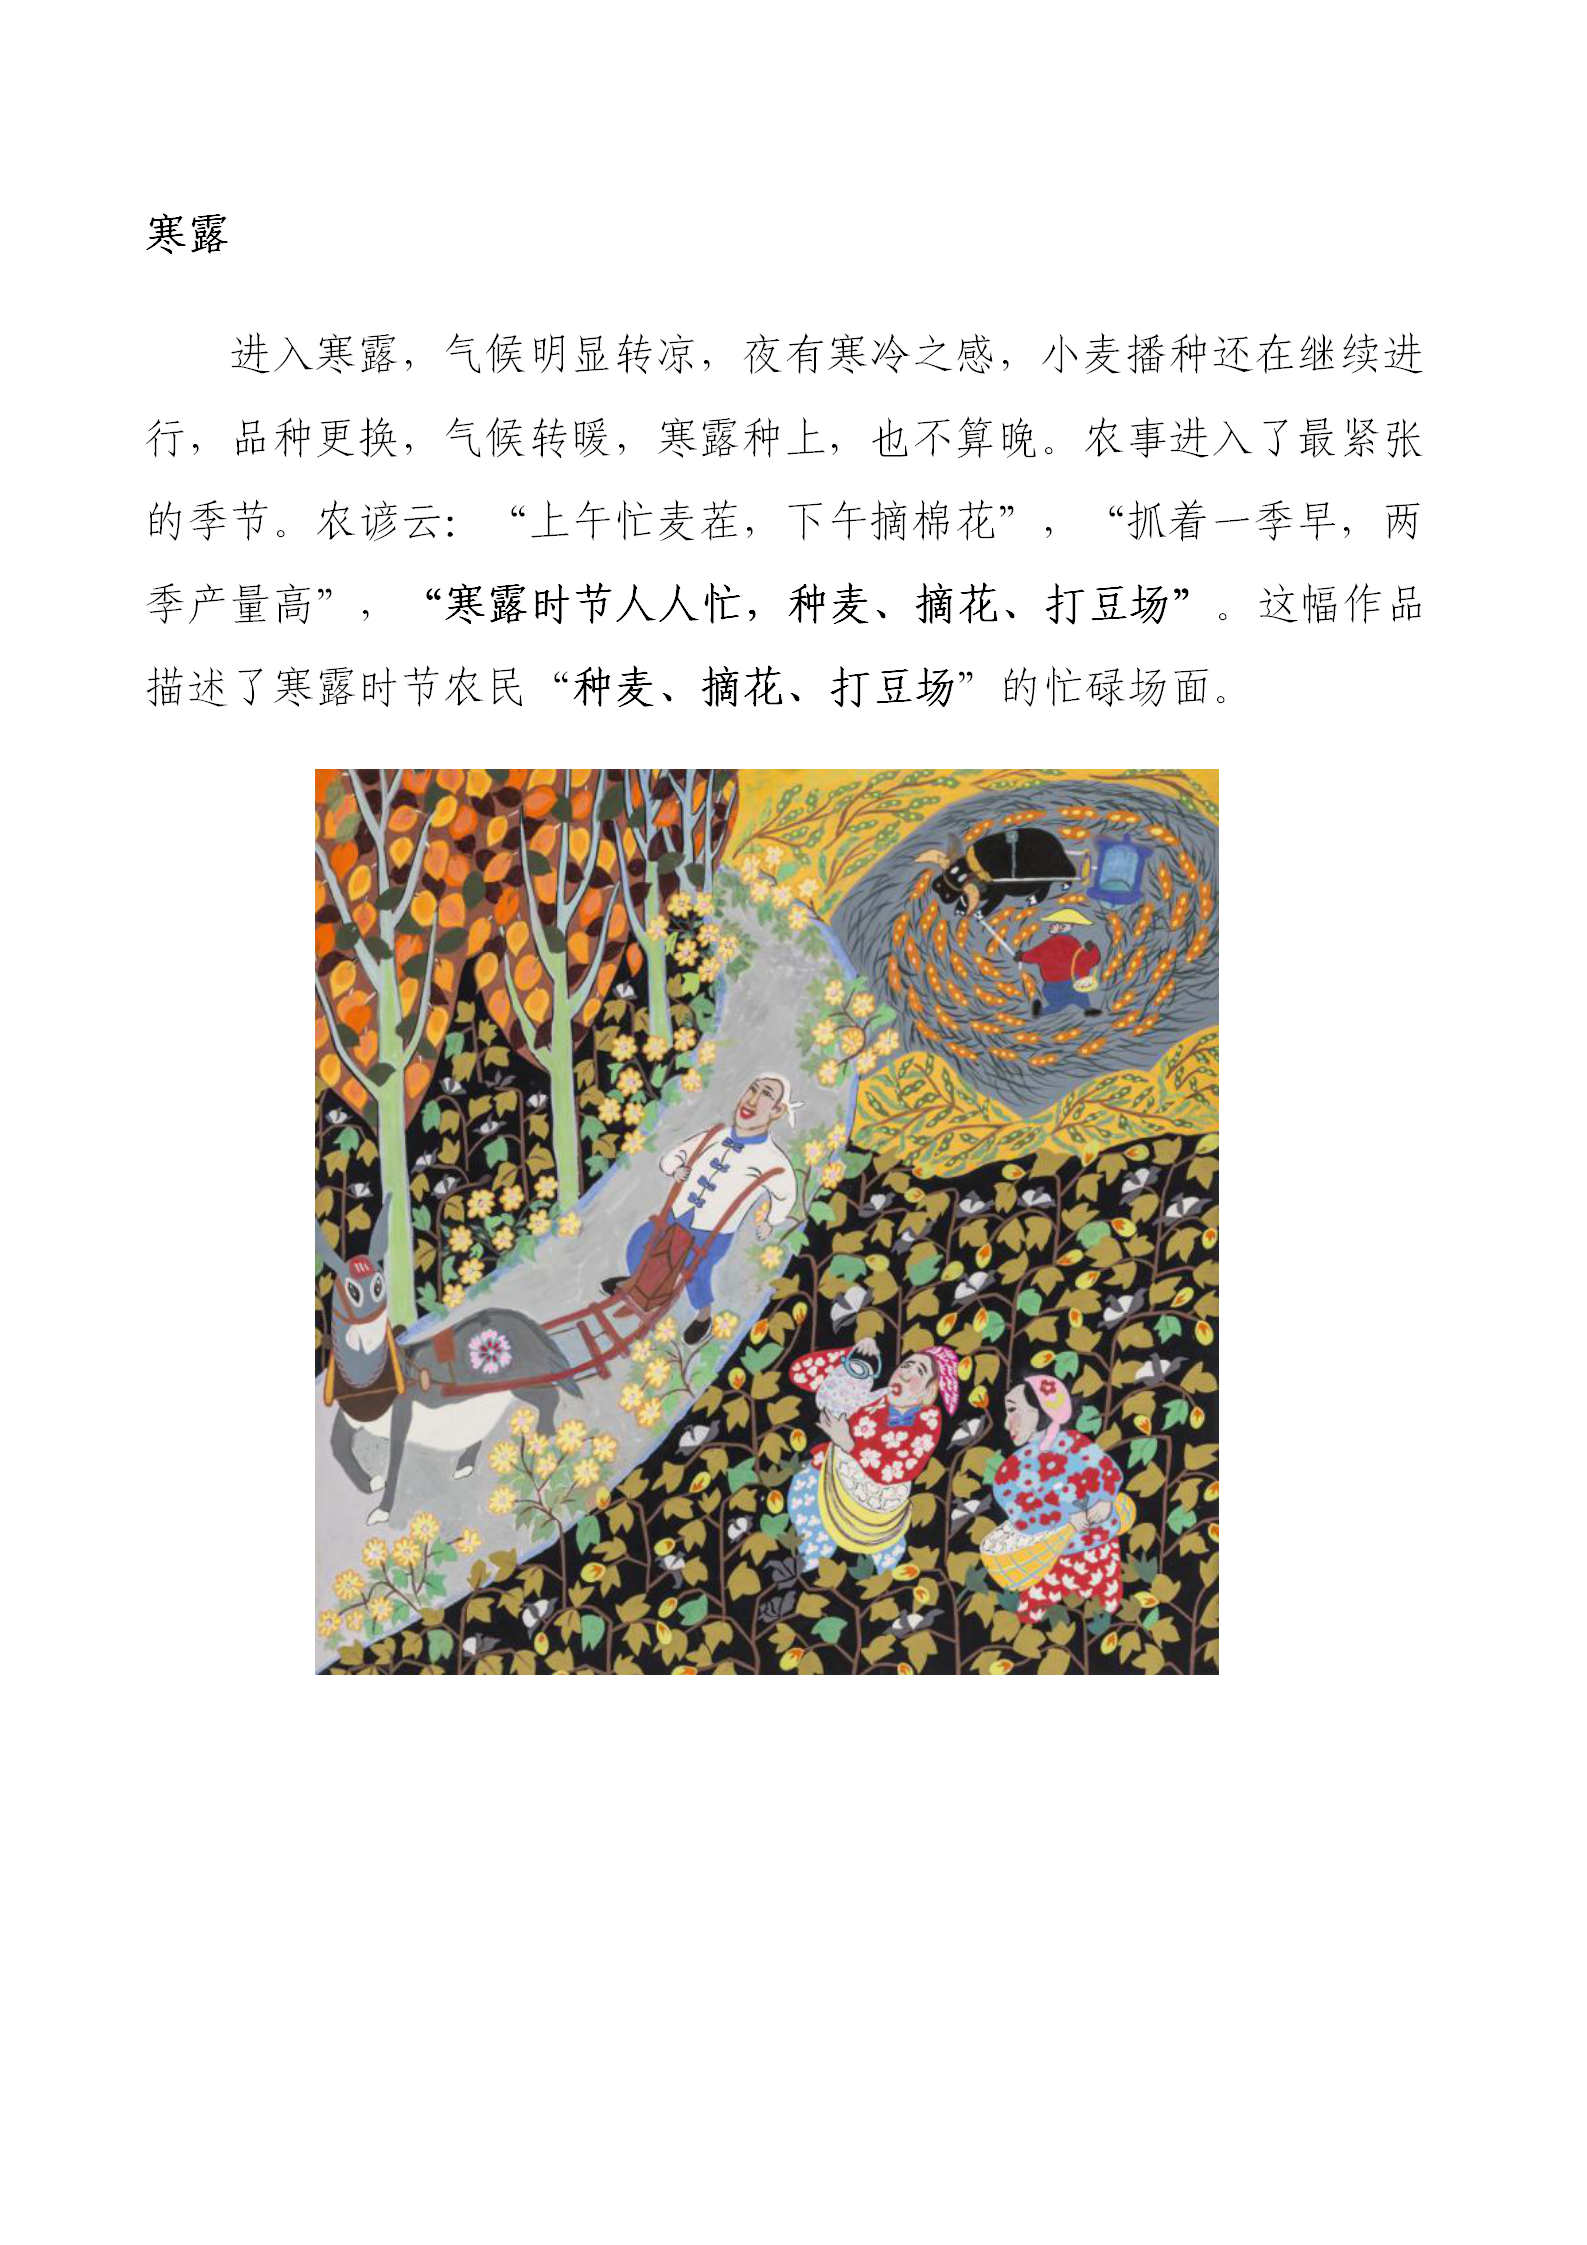 辛集农民画精品展示——中国“年”的传统习俗